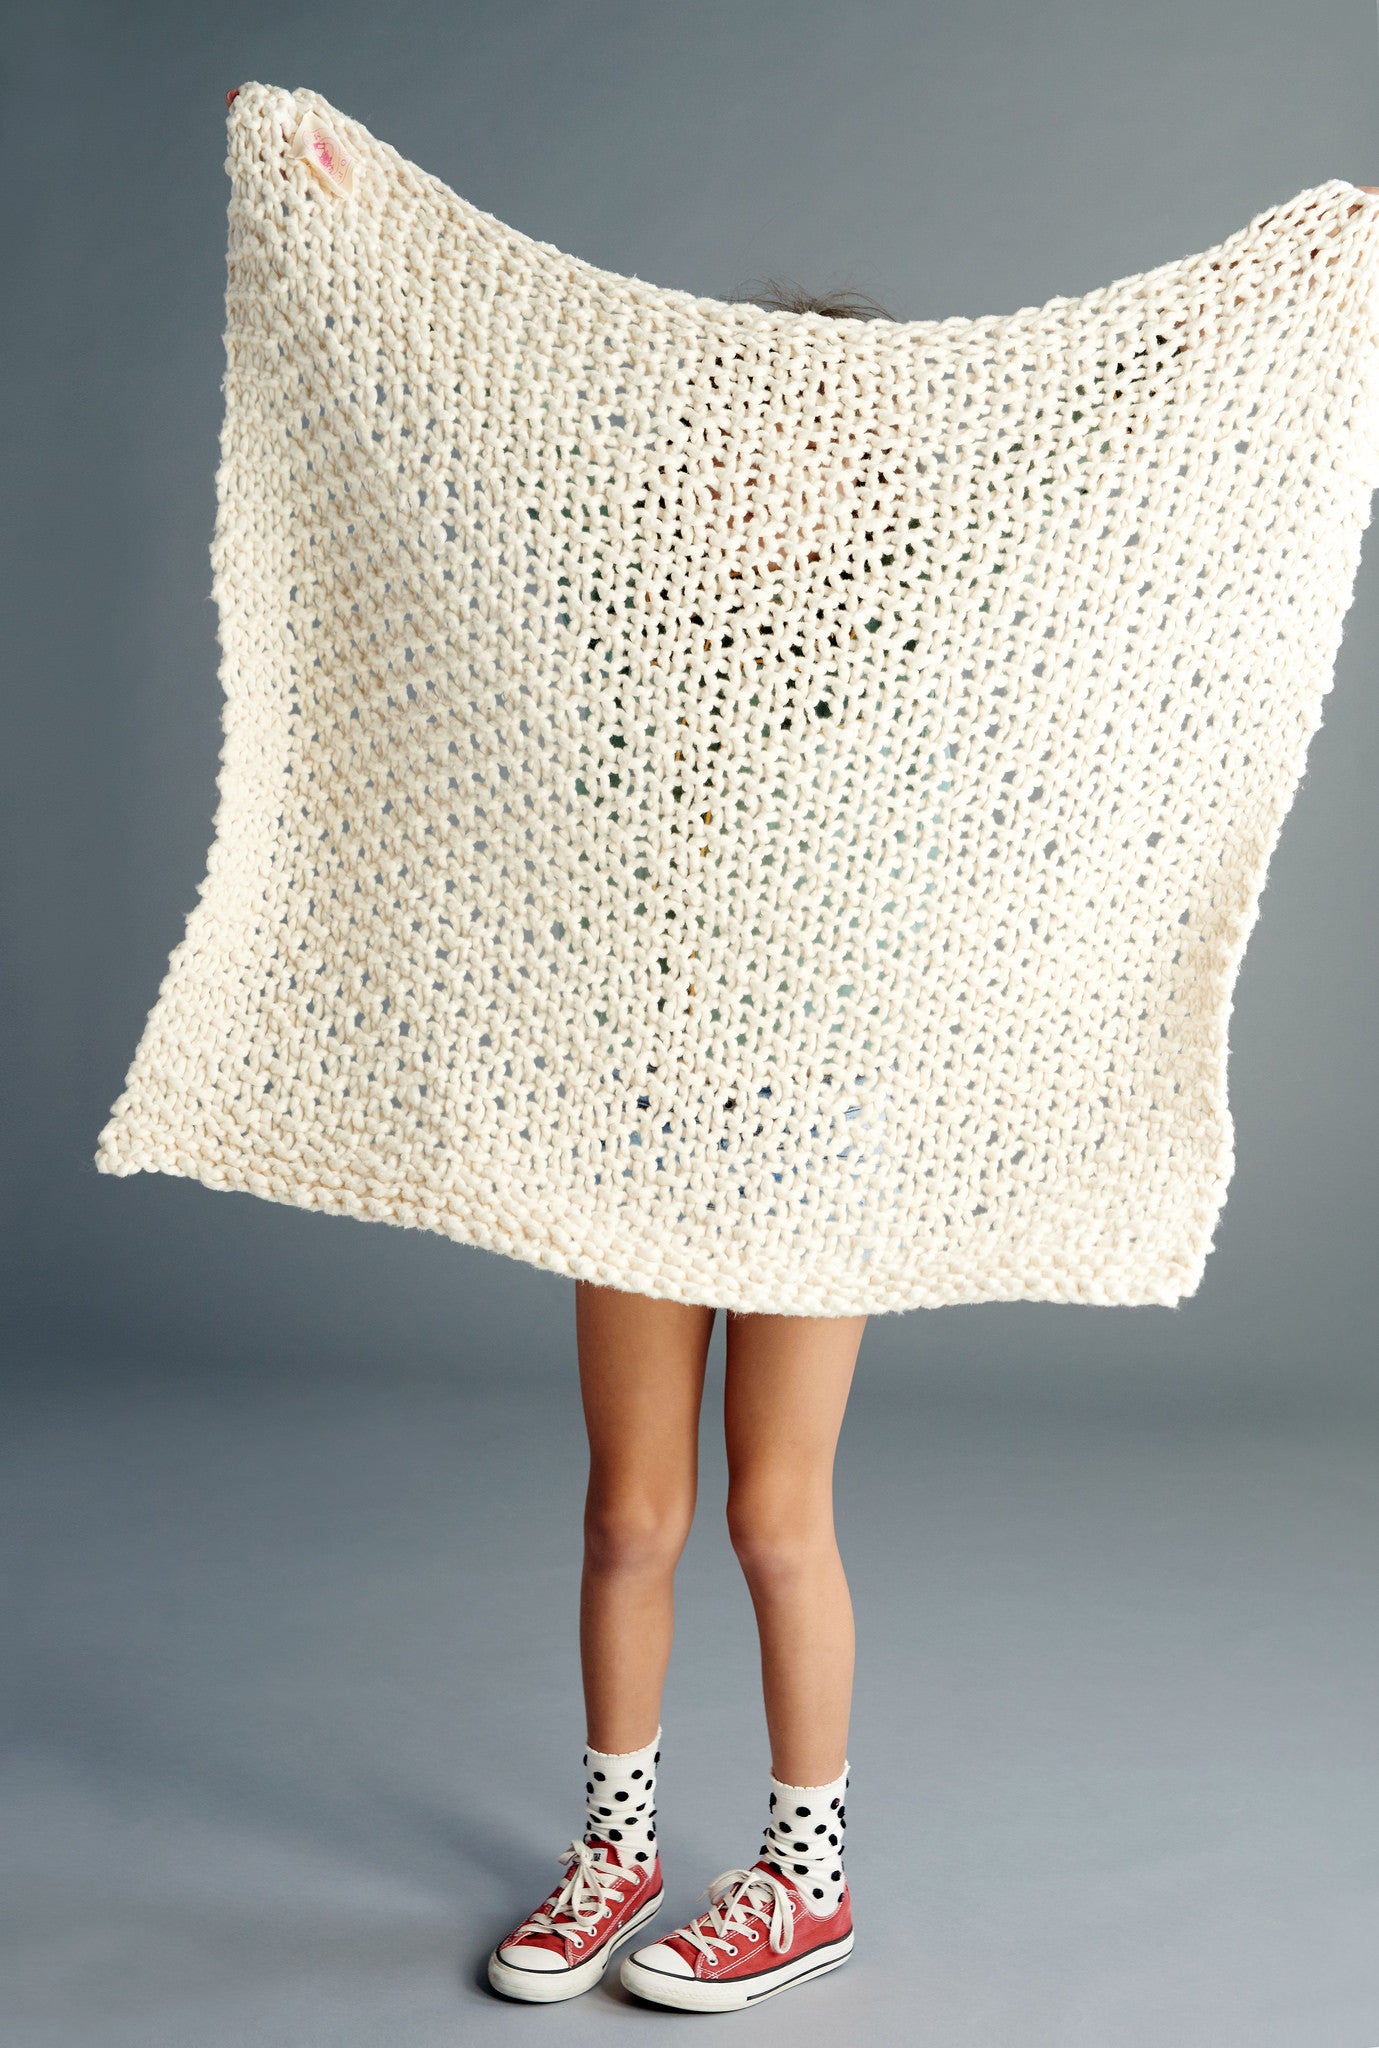 DIY Kit - Baby Blanket - Big Cotton